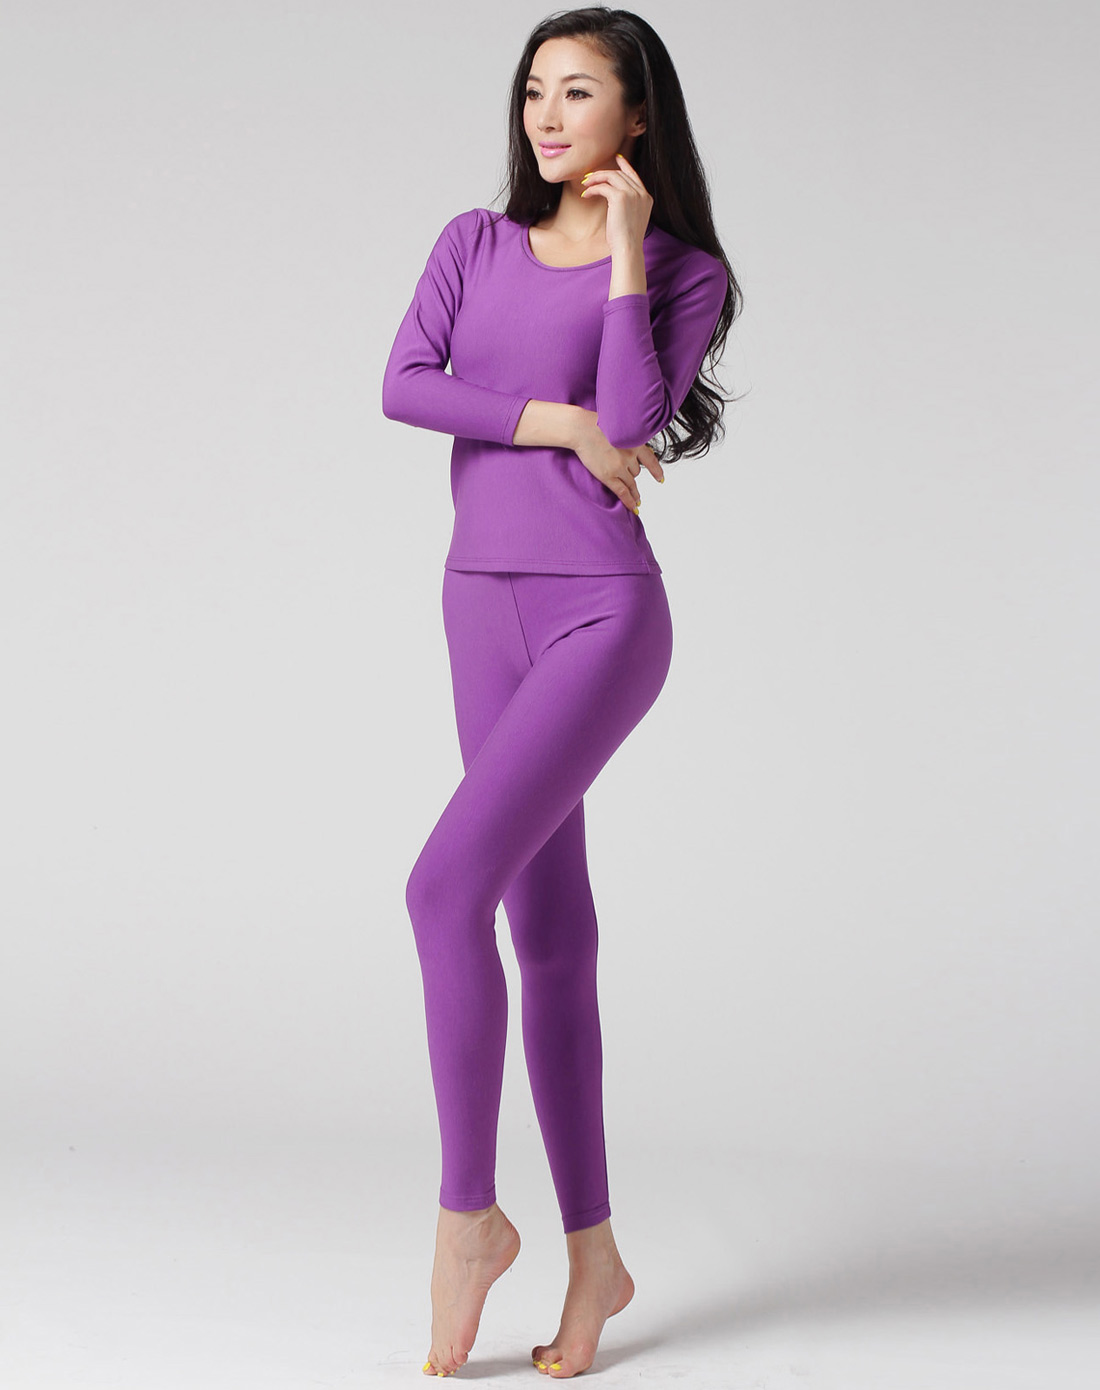 女款紫色优雅保暖长袖内衣套装